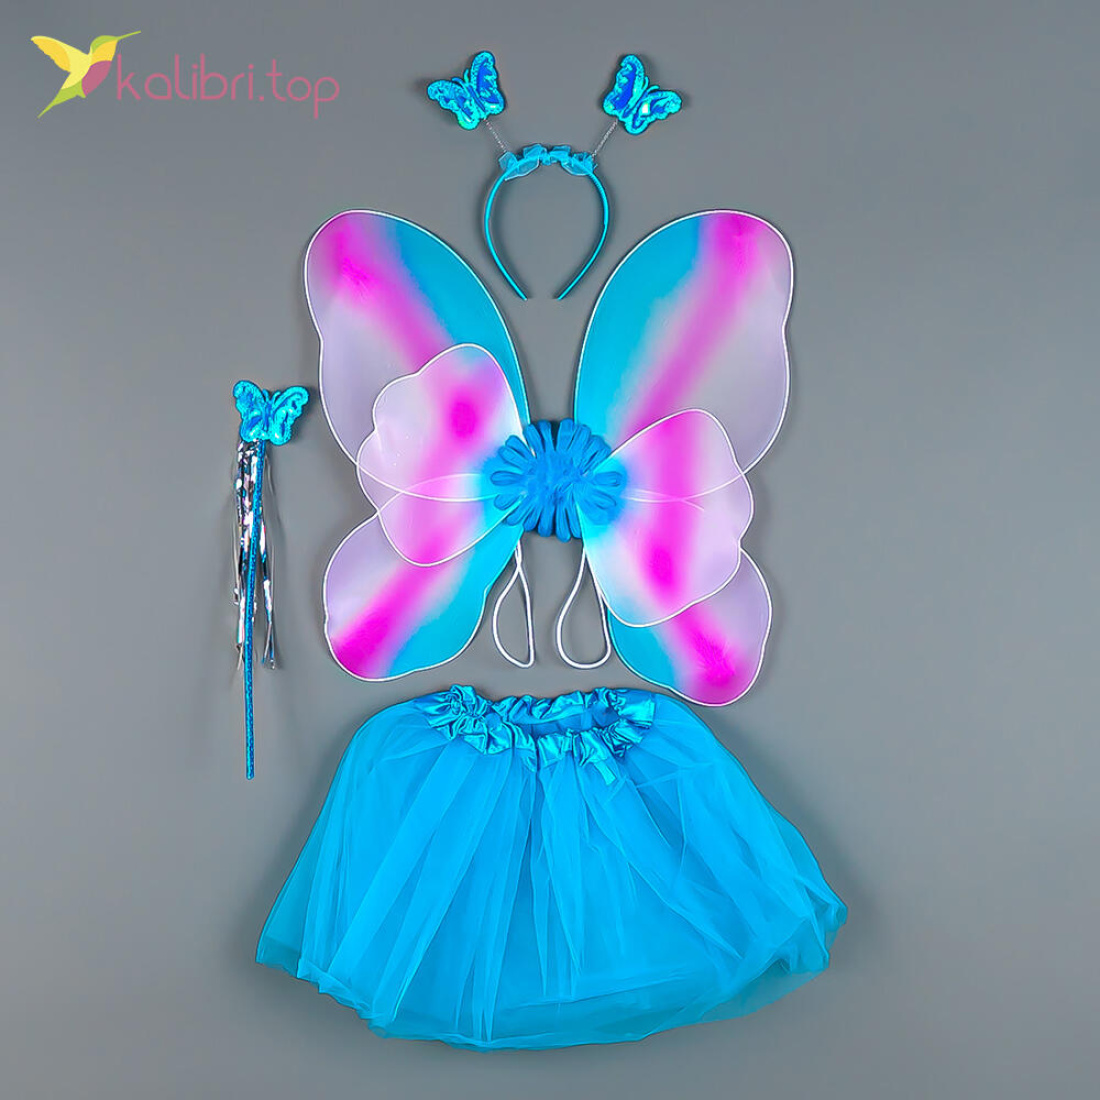 Карнавальный набор бабочки с юбкой голубой оптом фото 01